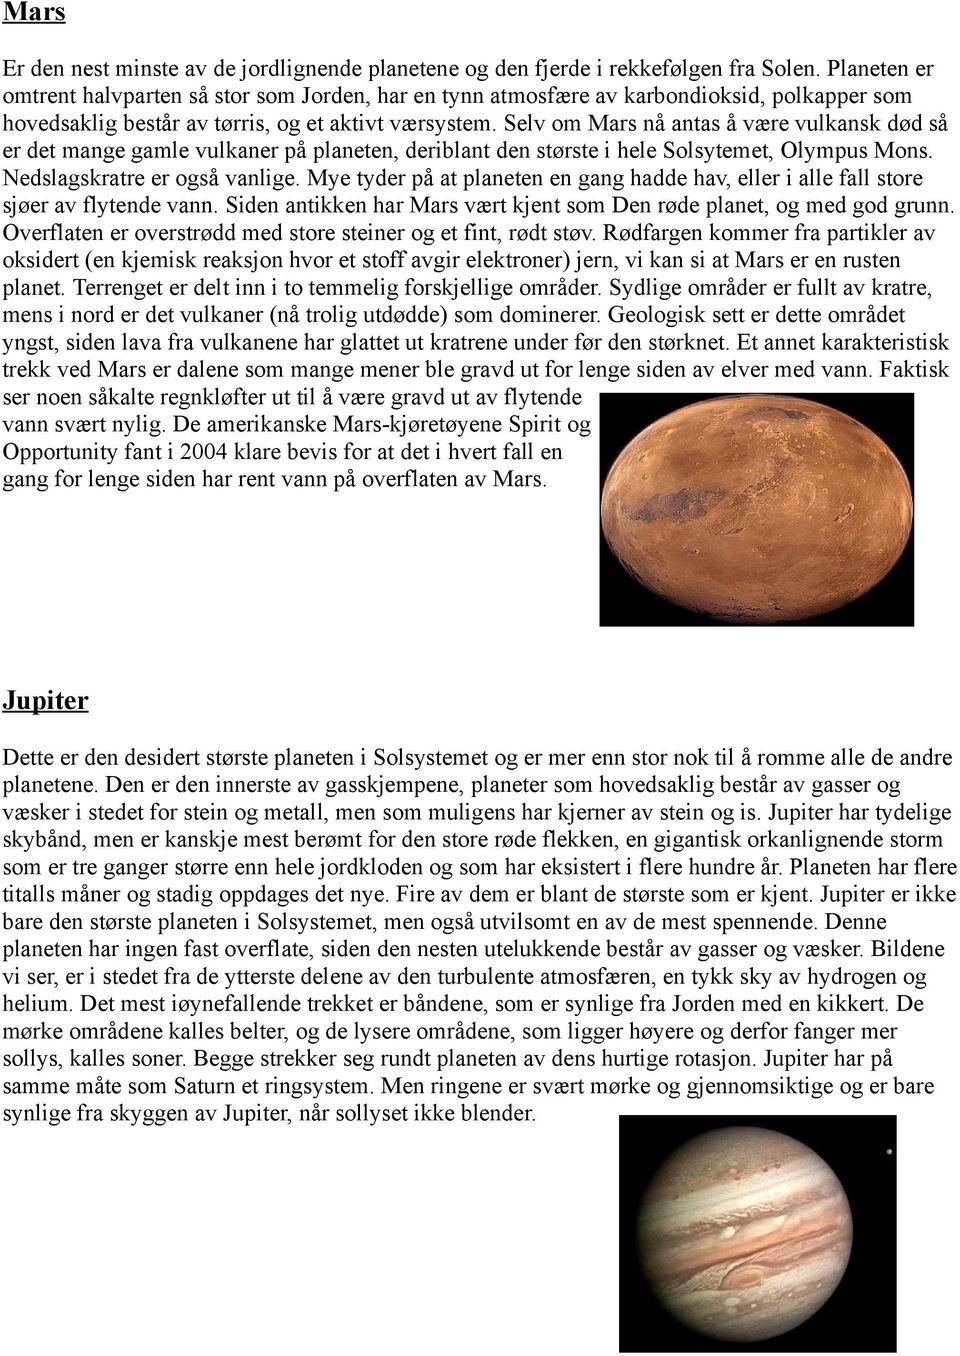 Selv om Mars nå antas å være vulkansk død så er det mange gamle vulkaner på planeten, deriblant den største i hele Solsytemet, Olympus Mons. Nedslagskratre er også vanlige.